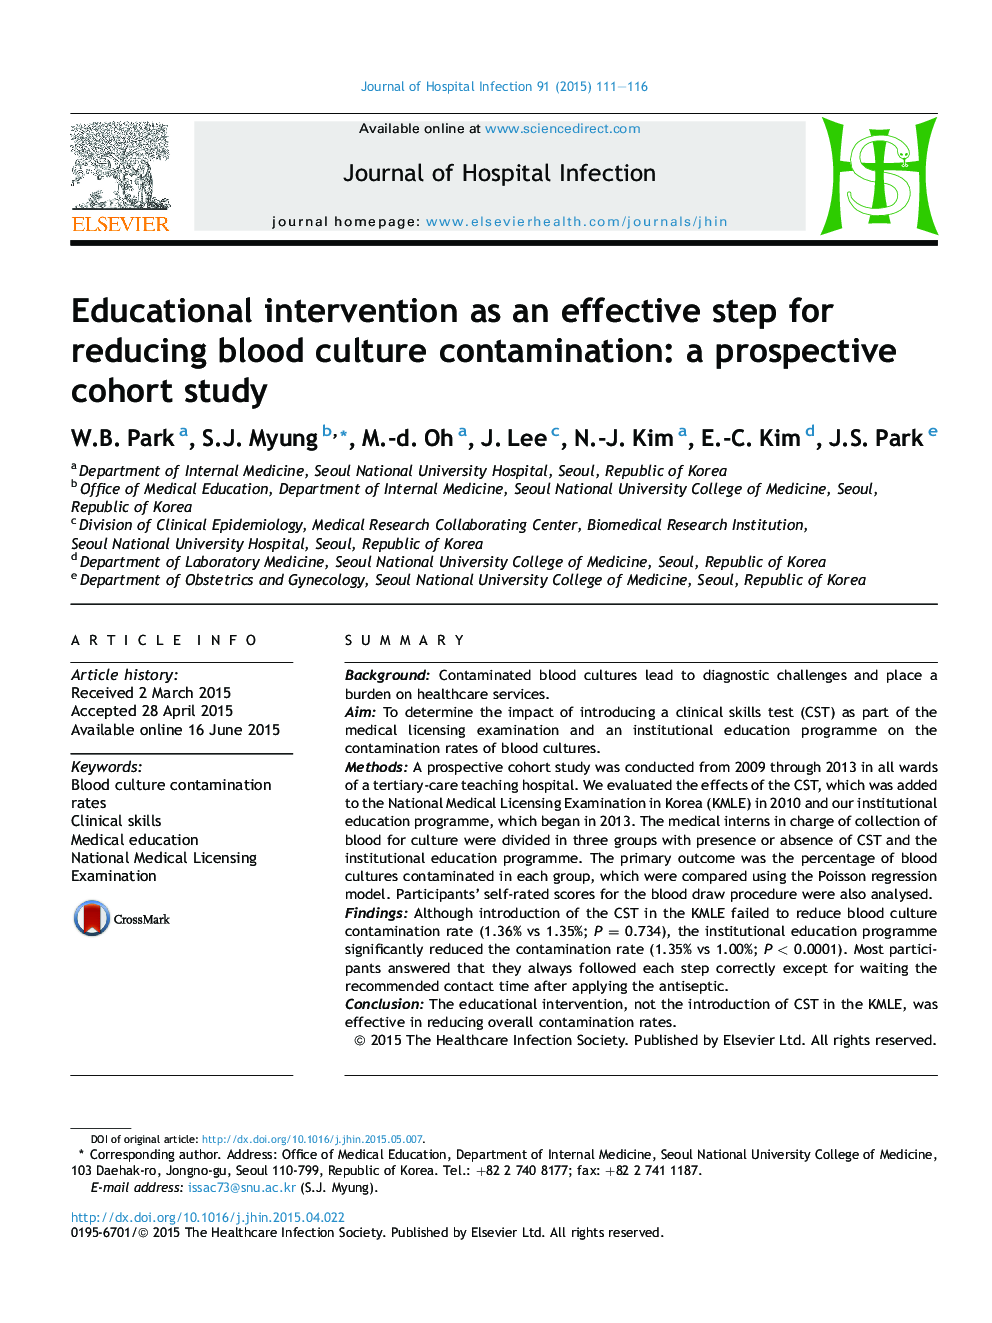 مداخله آموزشی به عنوان گامی موثر برای کاهش آلودگی فرهنگ خون: یک مطالعه کوهورت آینده نگر 